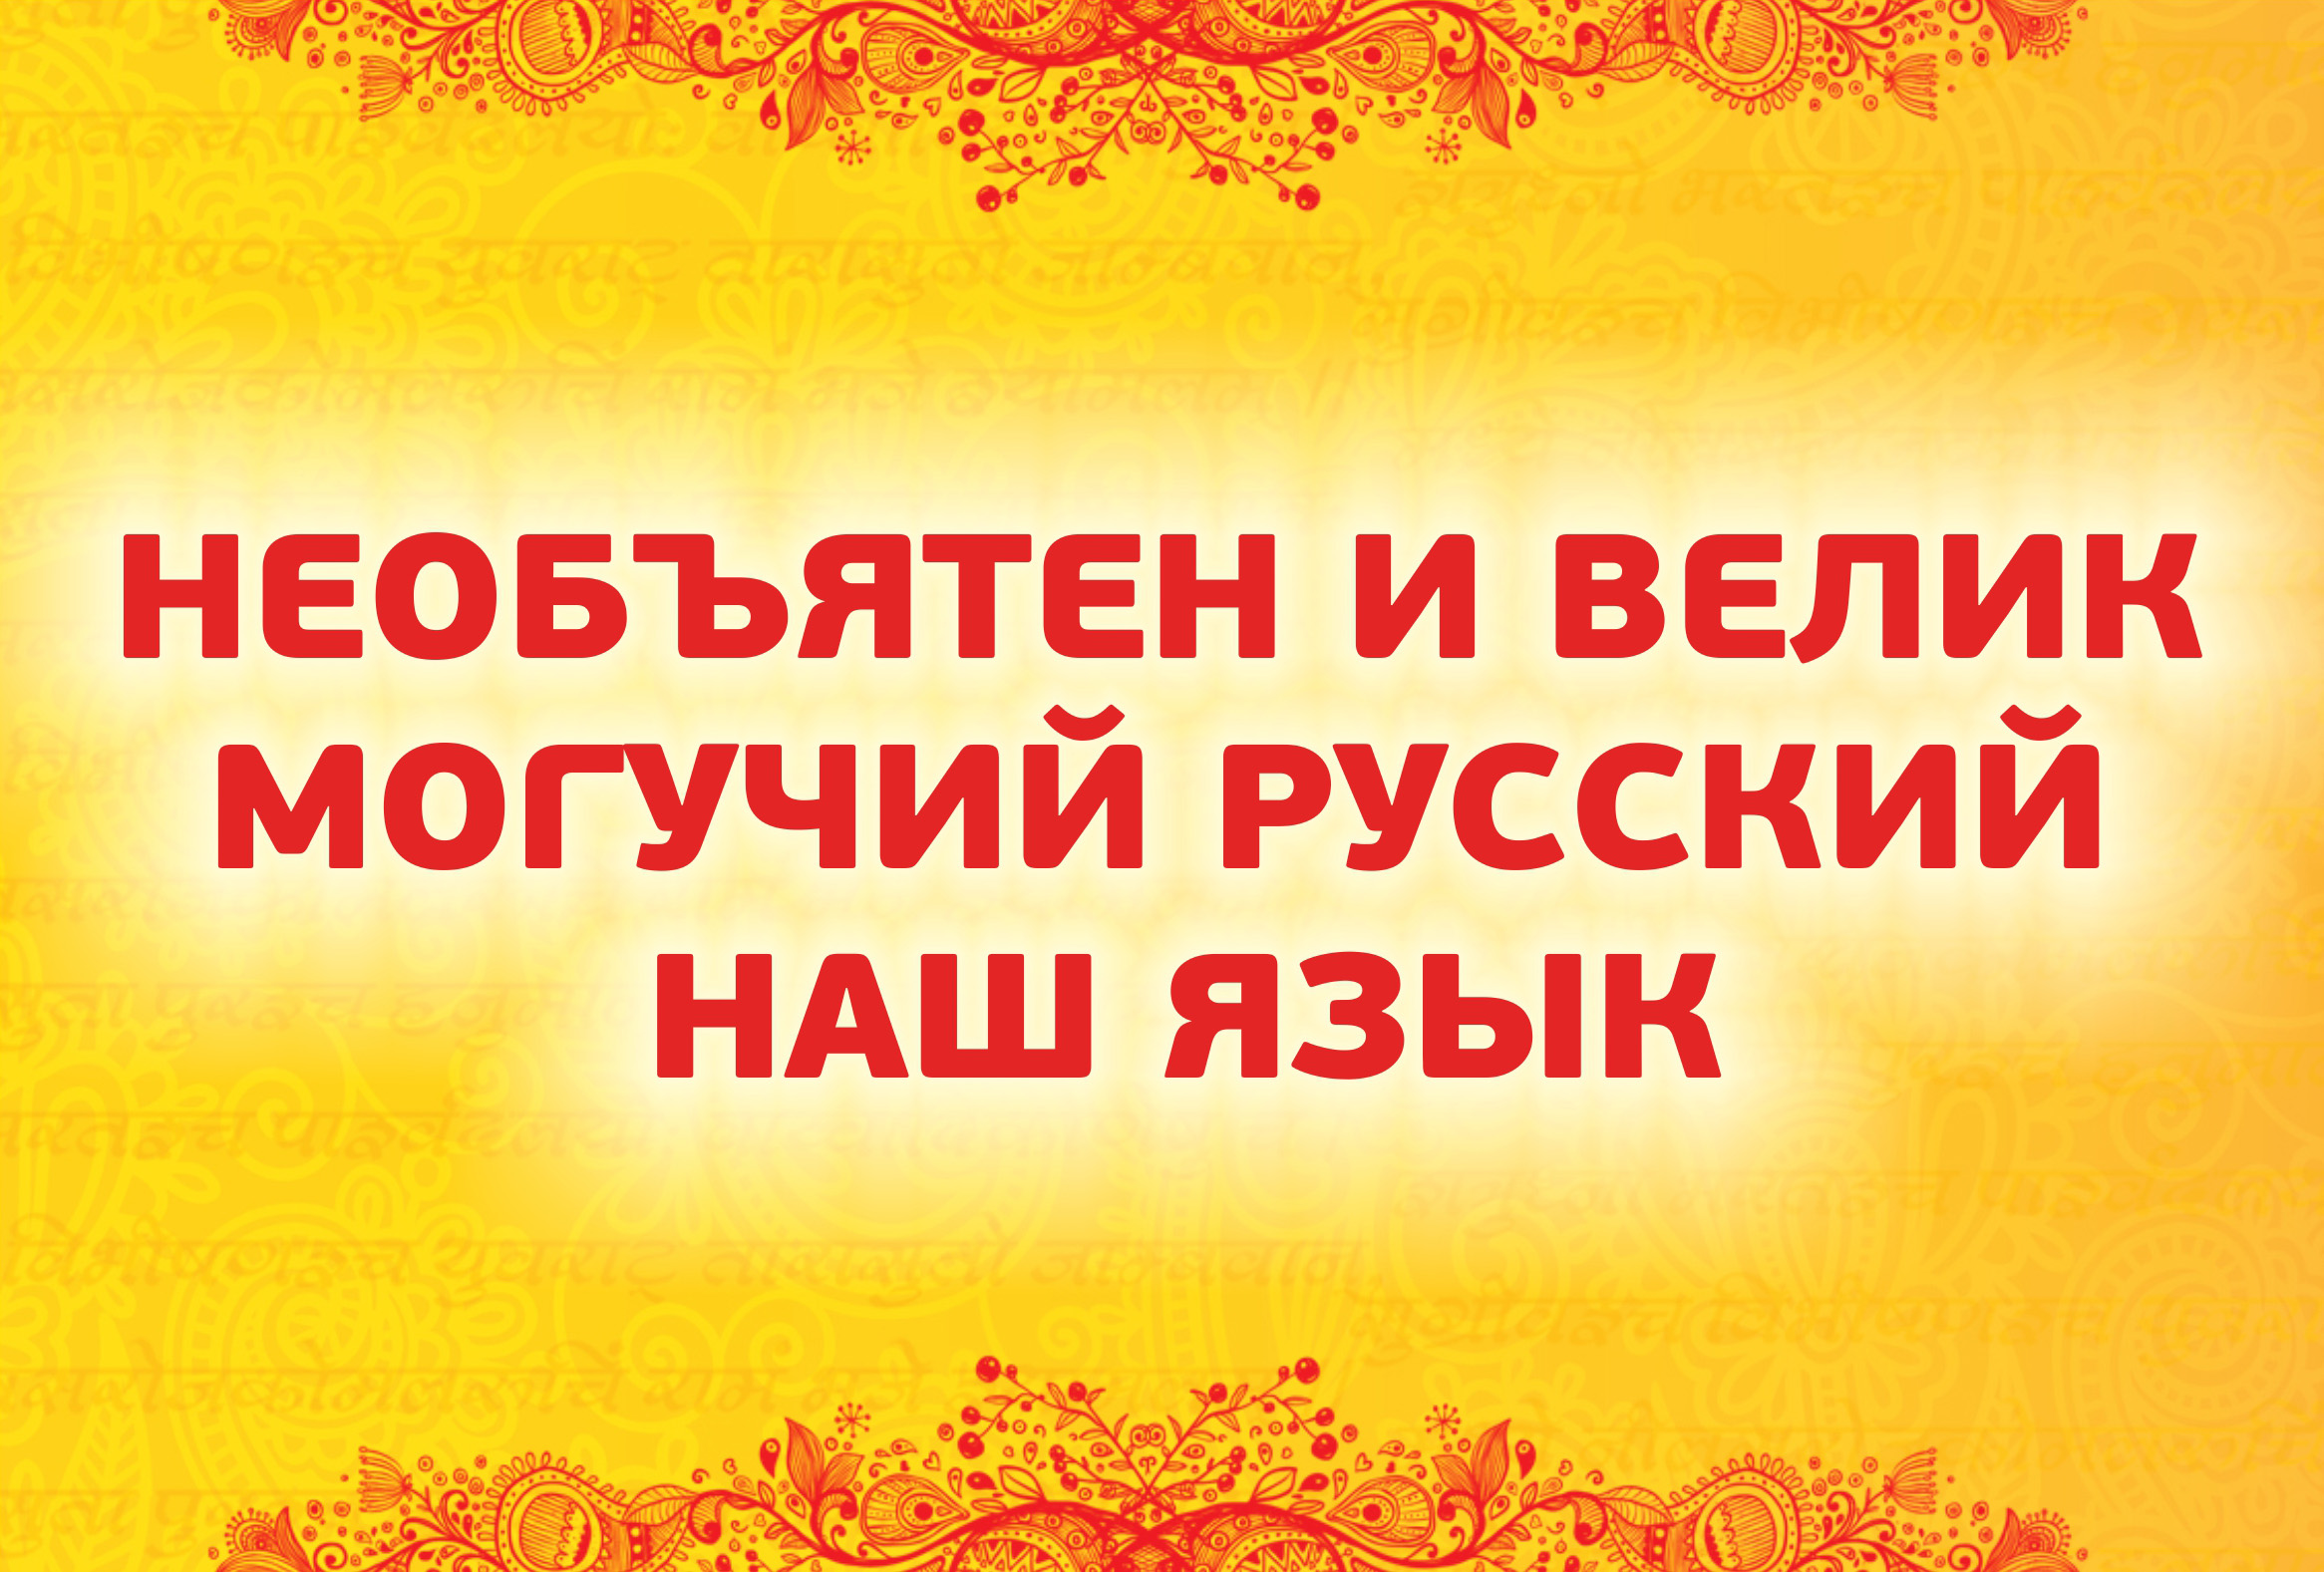 «Наш русский язык»